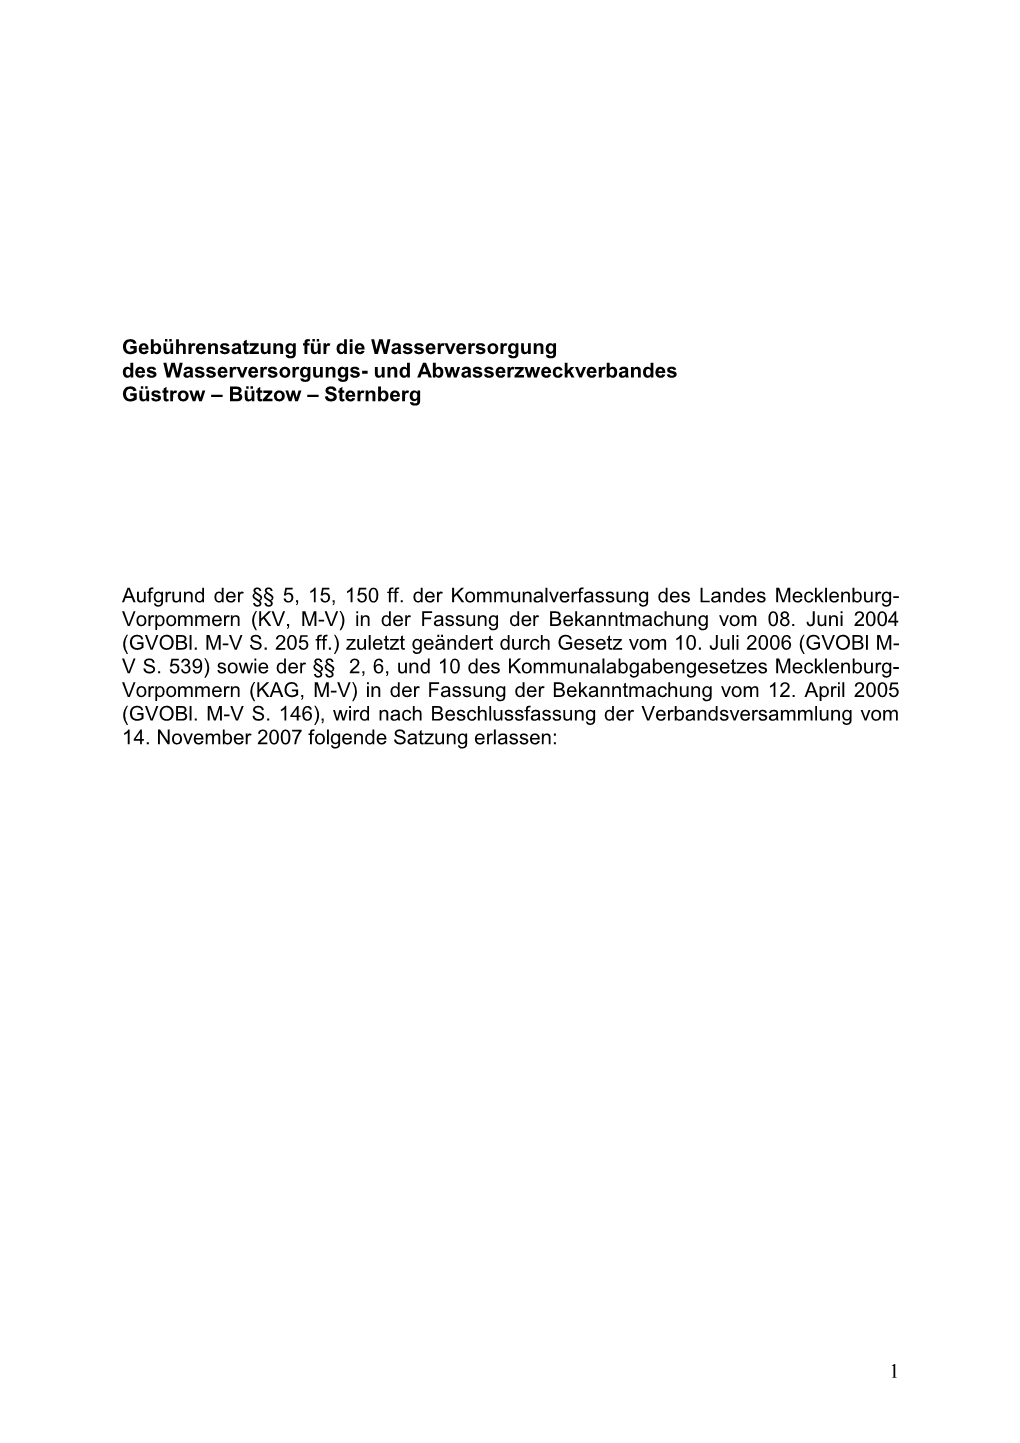 Beitrags- Und Gebührensatzung Für Die Wasserversorgung Des Wasser- Versorgungs- Und Abwasserzweckverbandes Güstrow-Bützow-Sternberg Vom 24